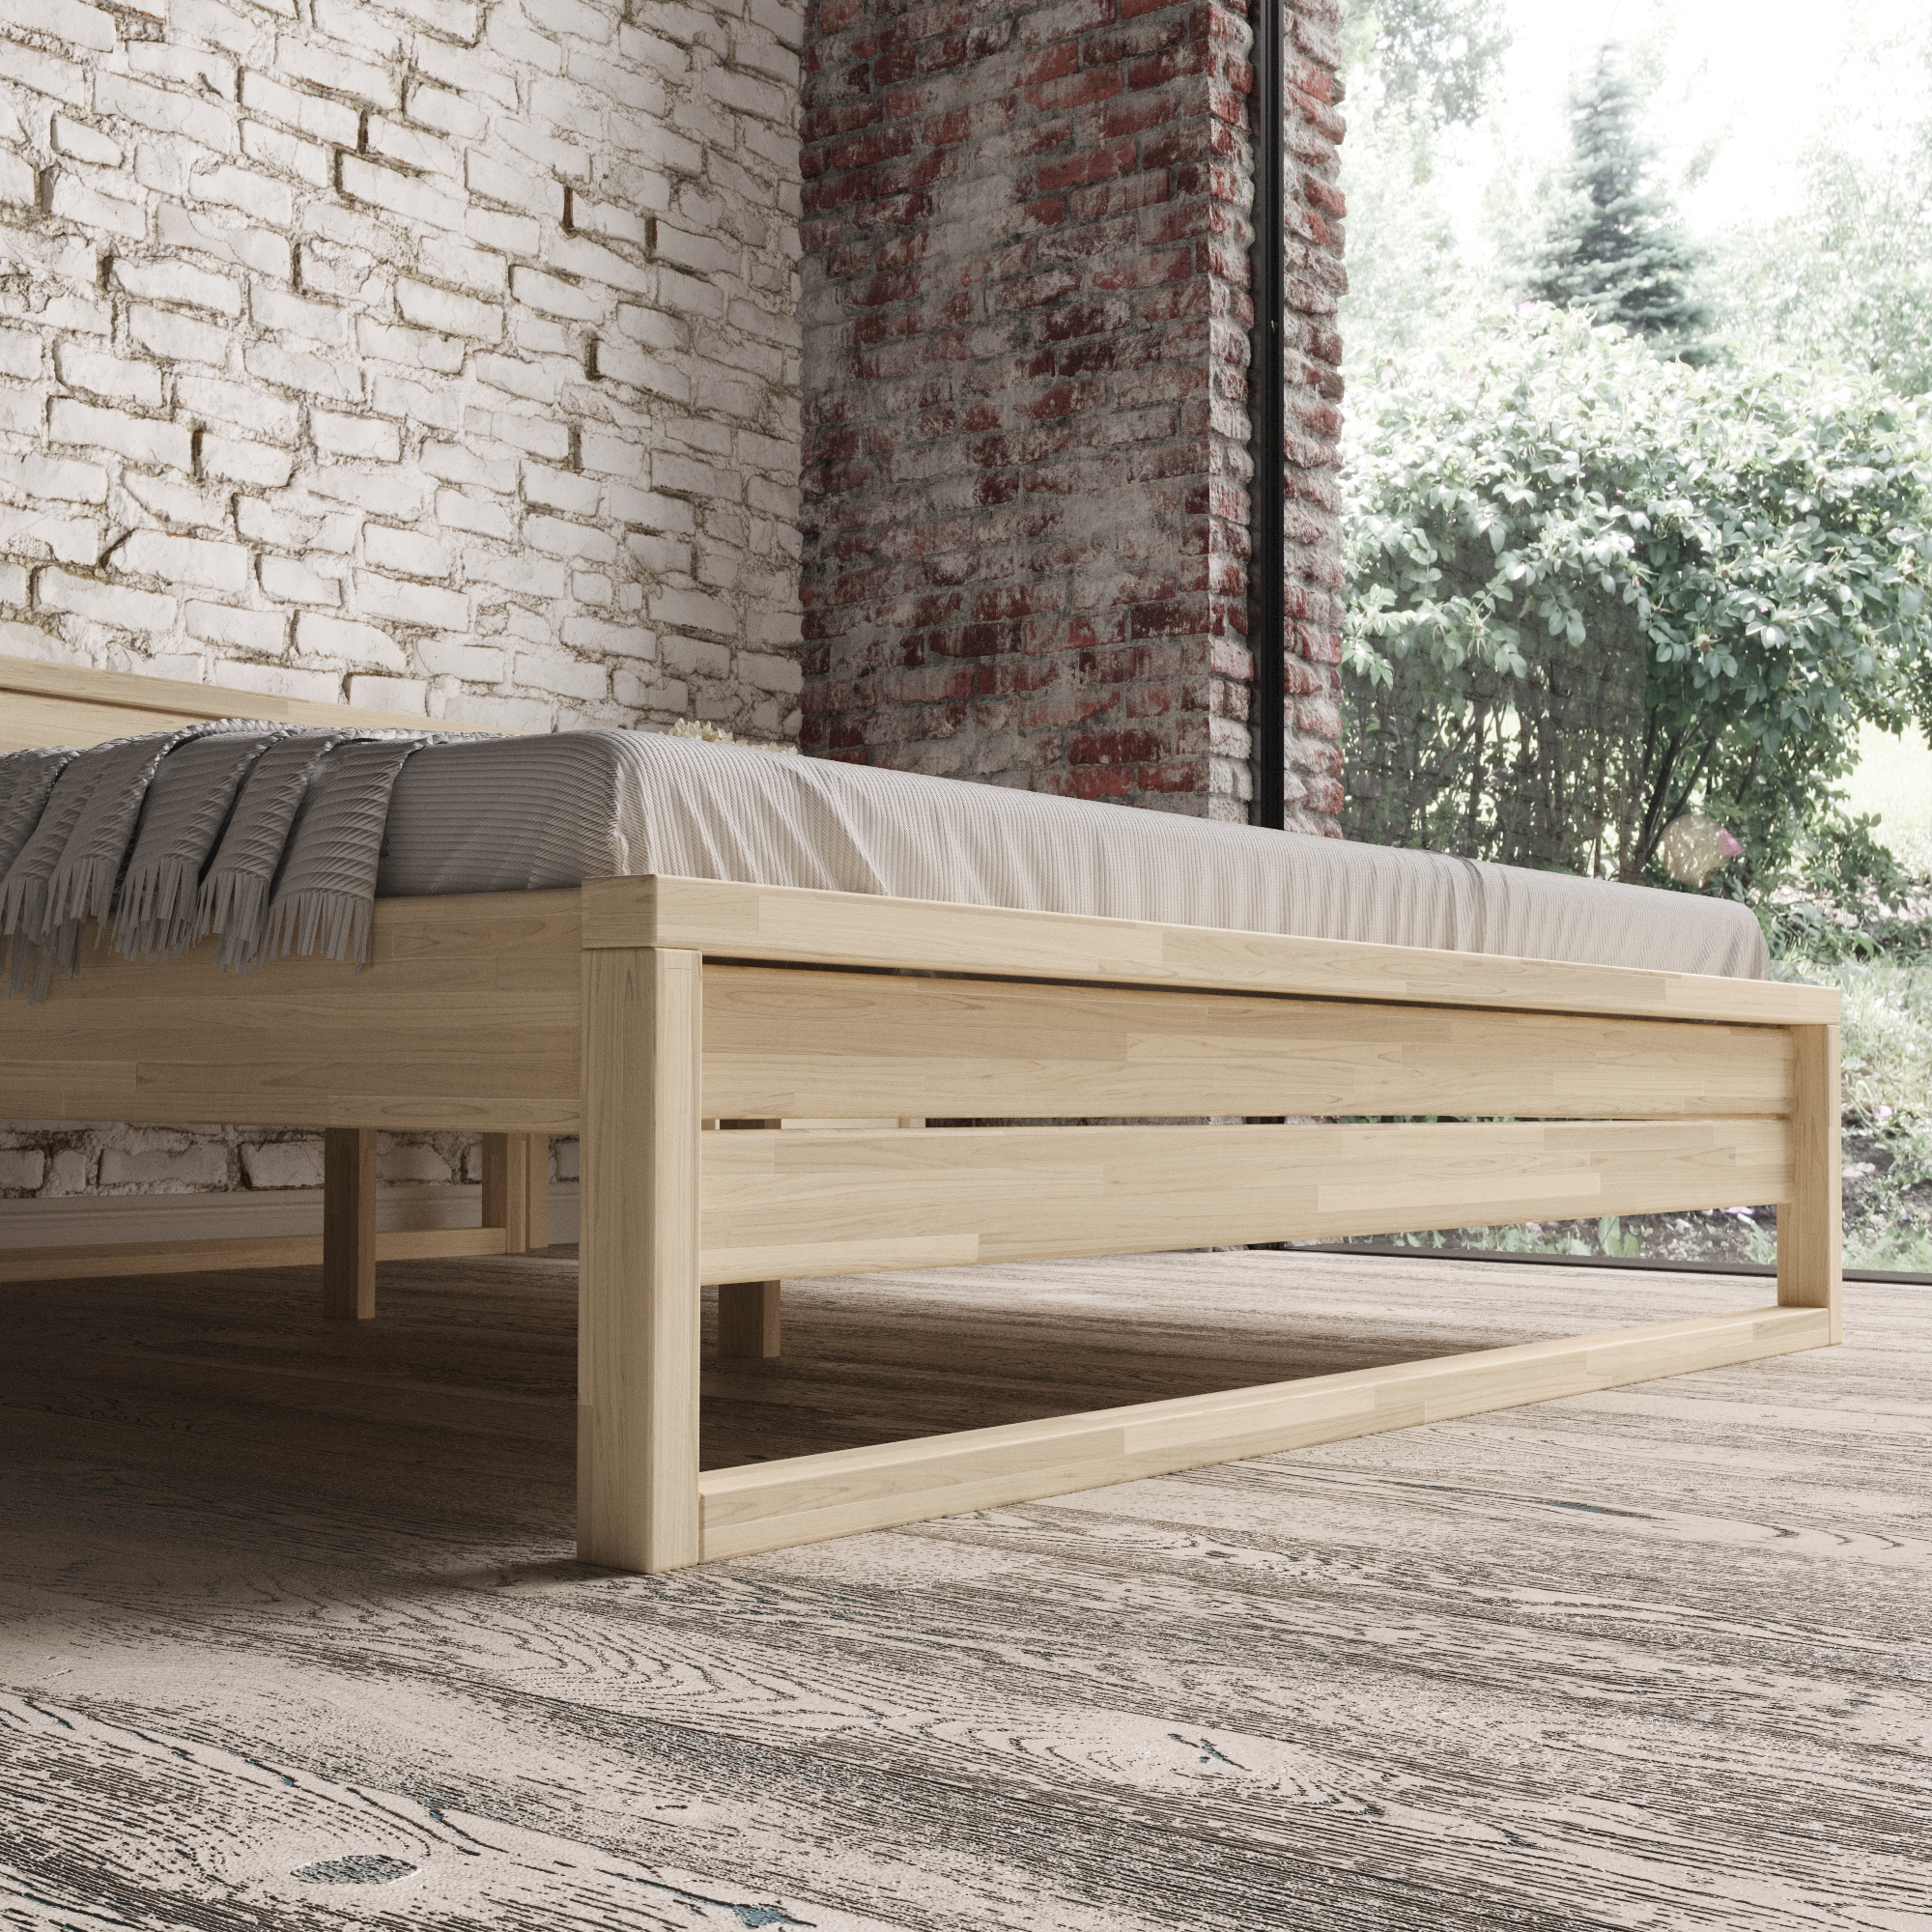 Кровати деревянные